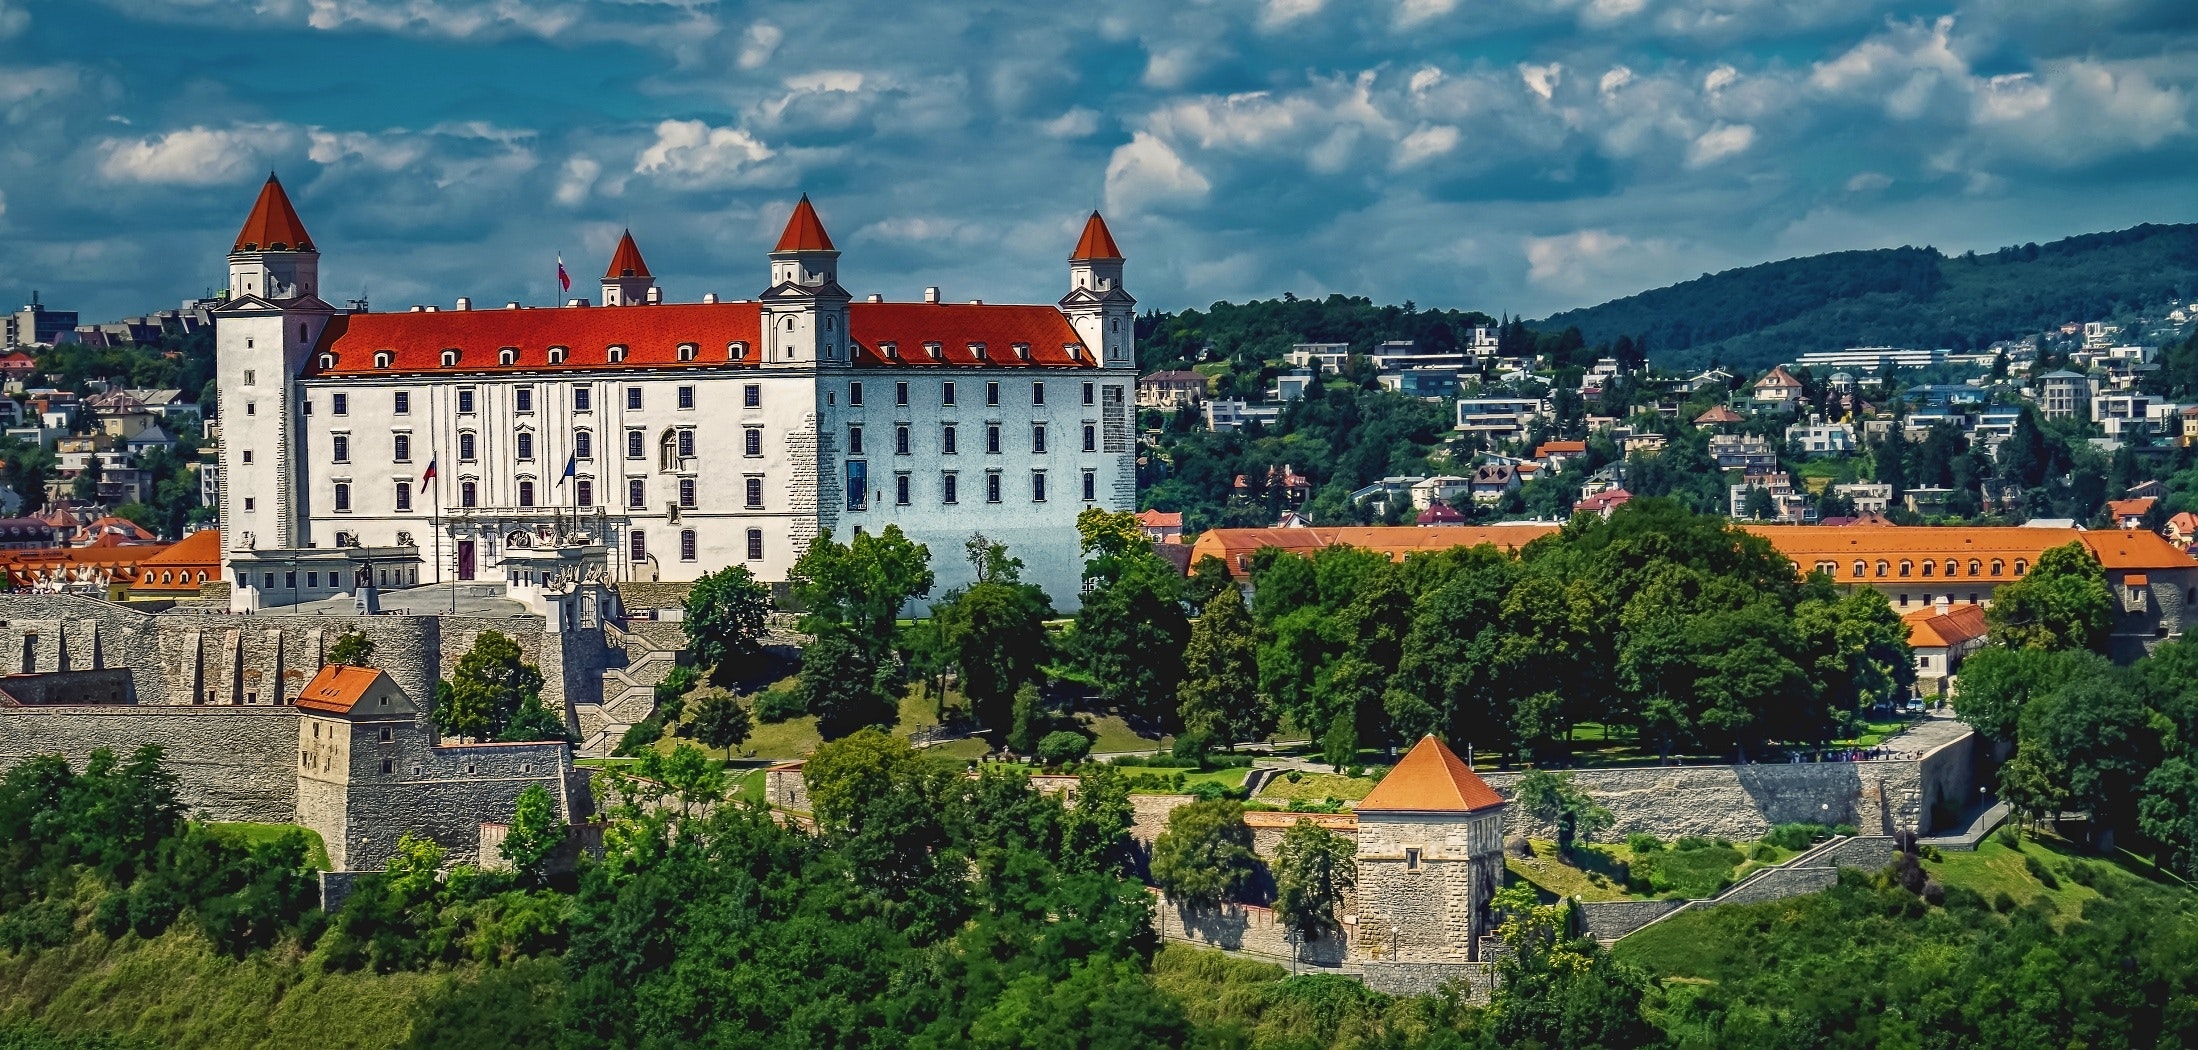 Zuge Wien-Bratislava: Wahrzeichen der Stadt, die Bratislavaer Burg